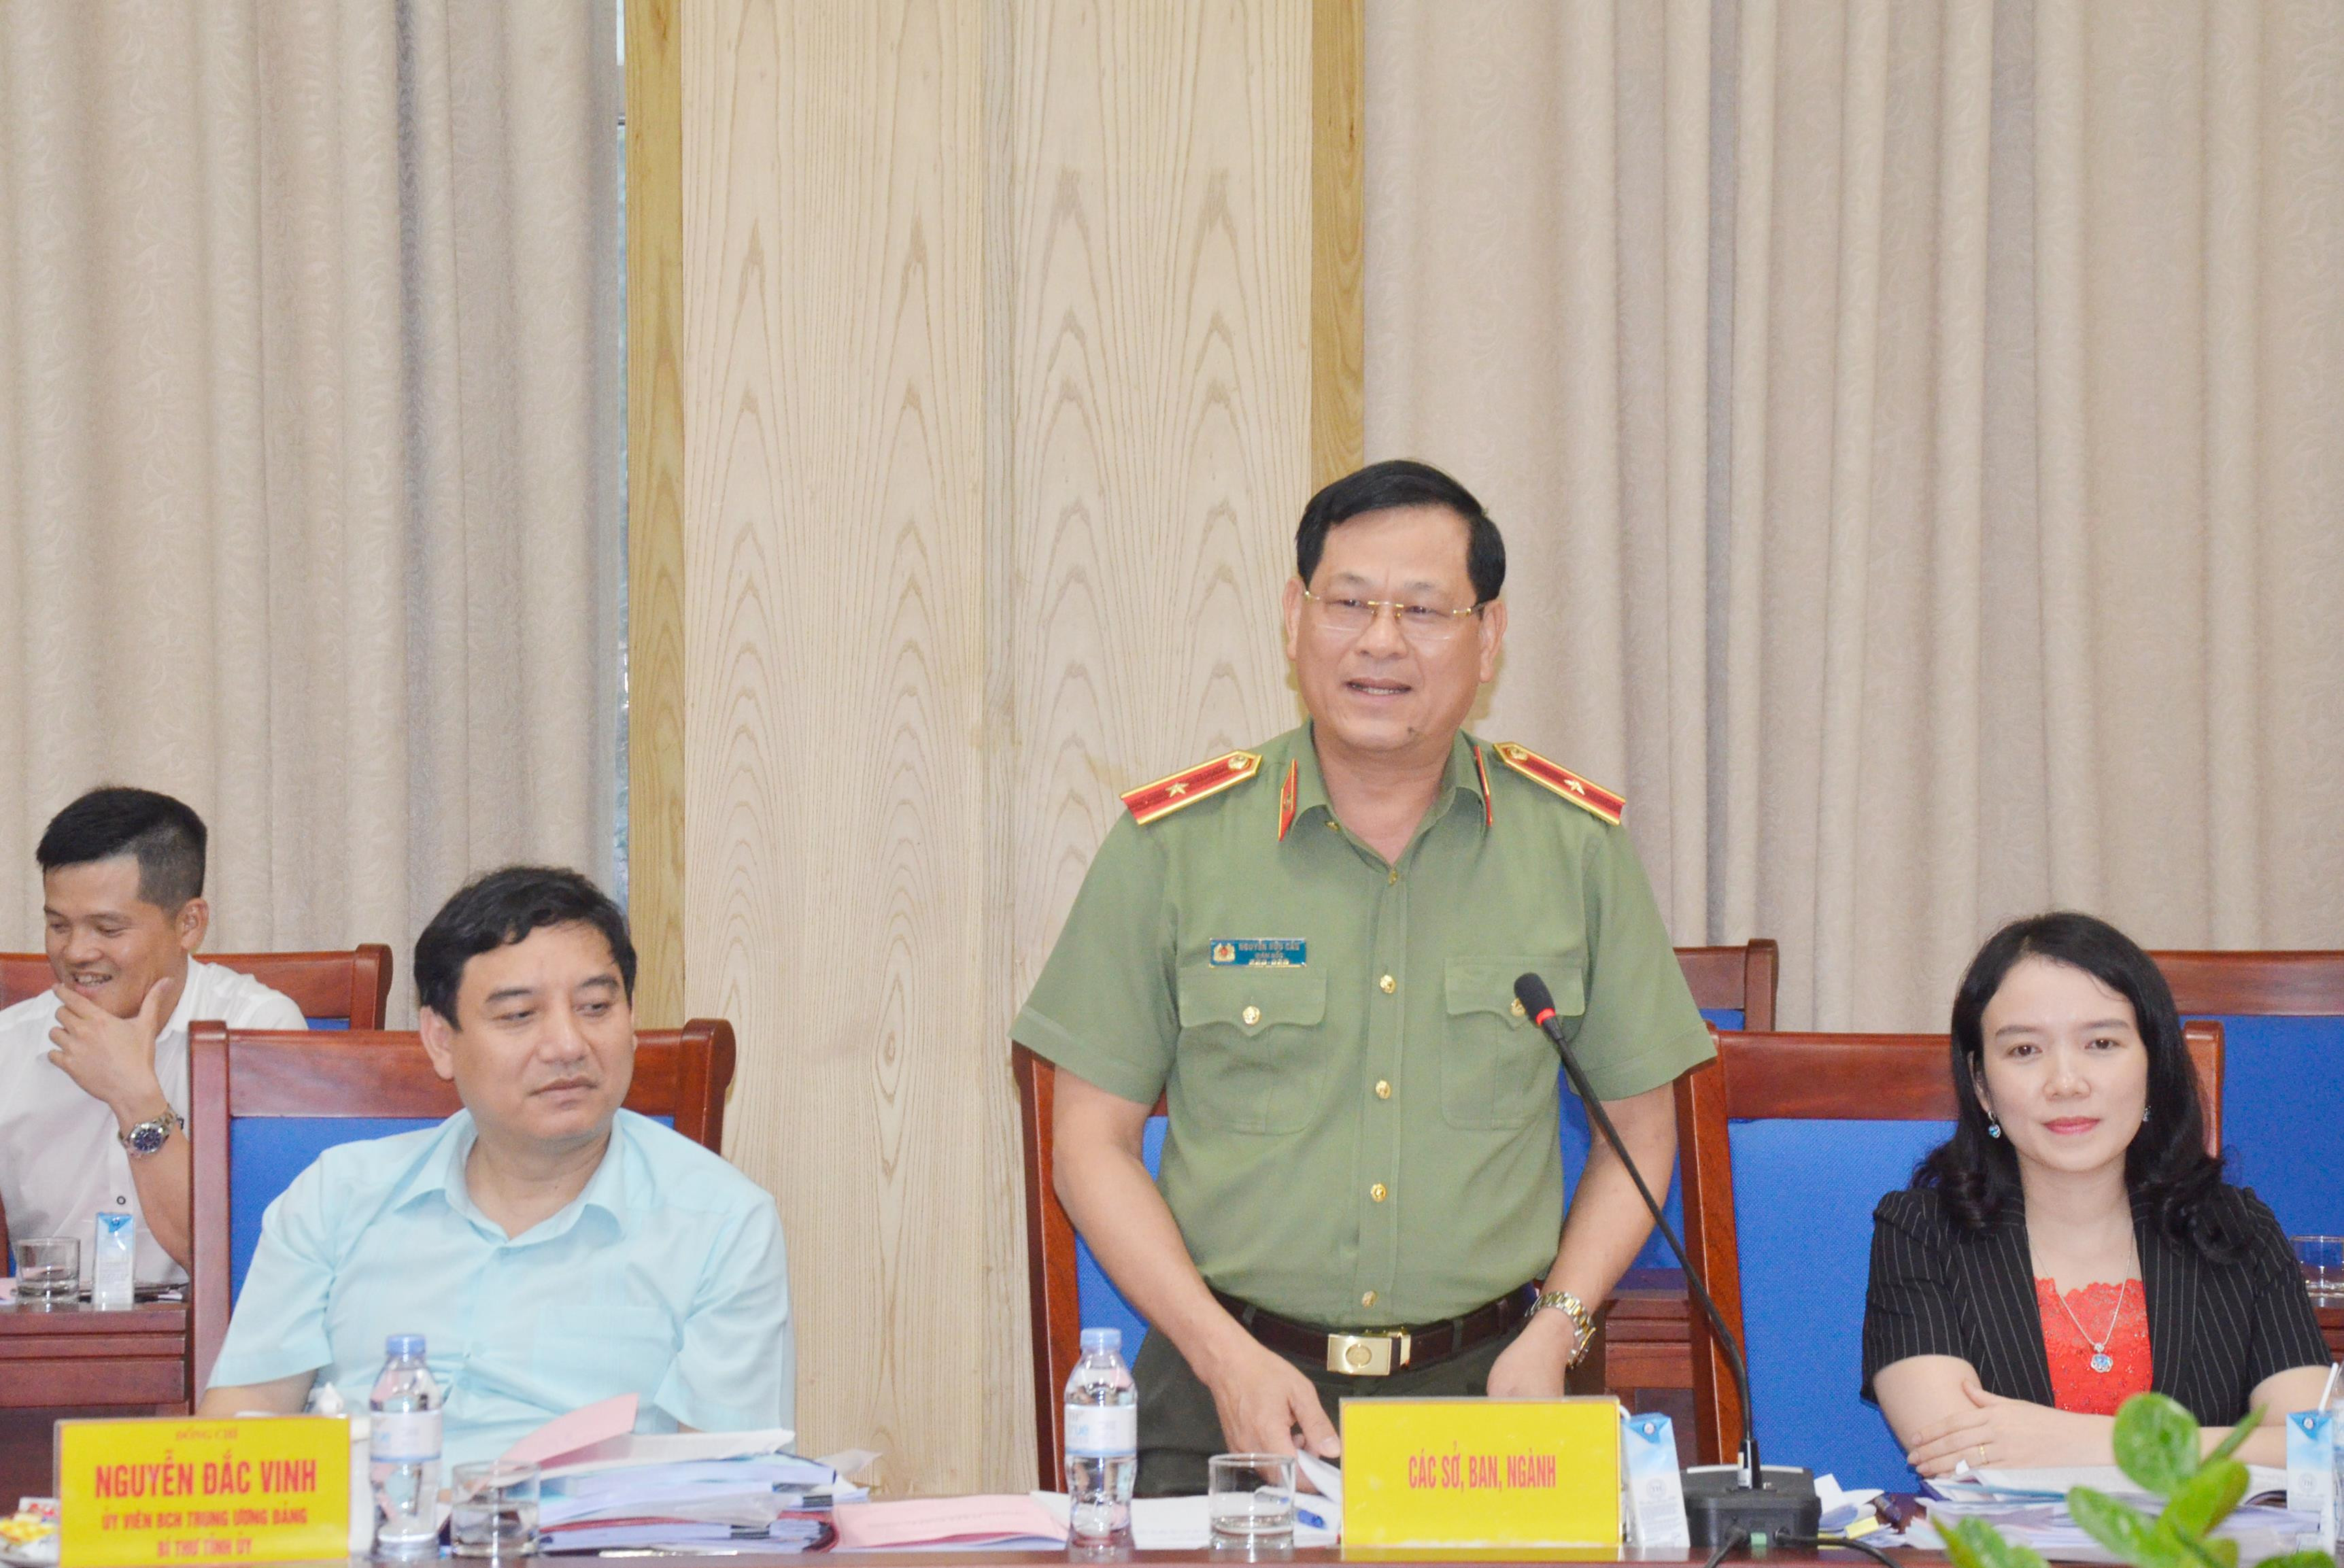 Thiếu tướng Nguyễn Hữu Cầu thông tin vụ việc. Ảnh: Thanh Lê